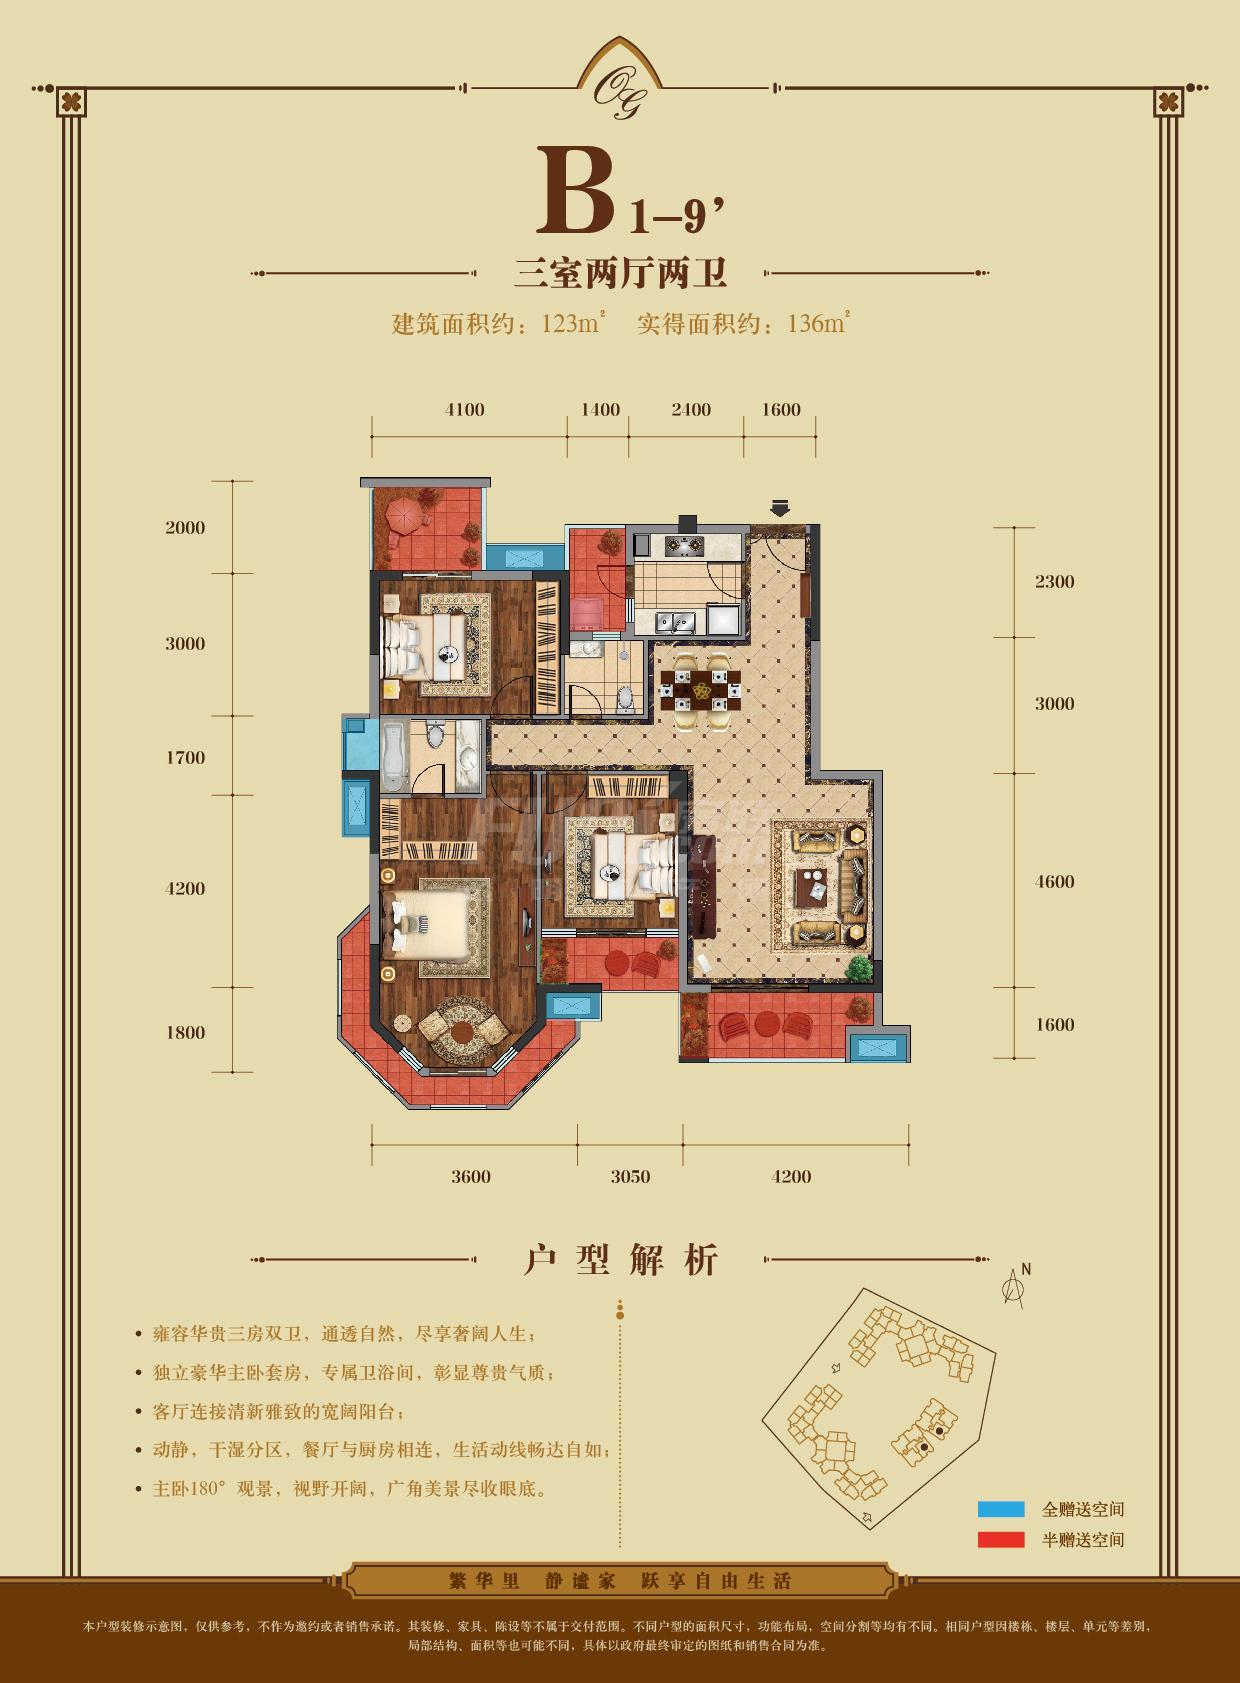 金澜苑b1-9'户型图,3室2厅2卫123.00平米- 成都